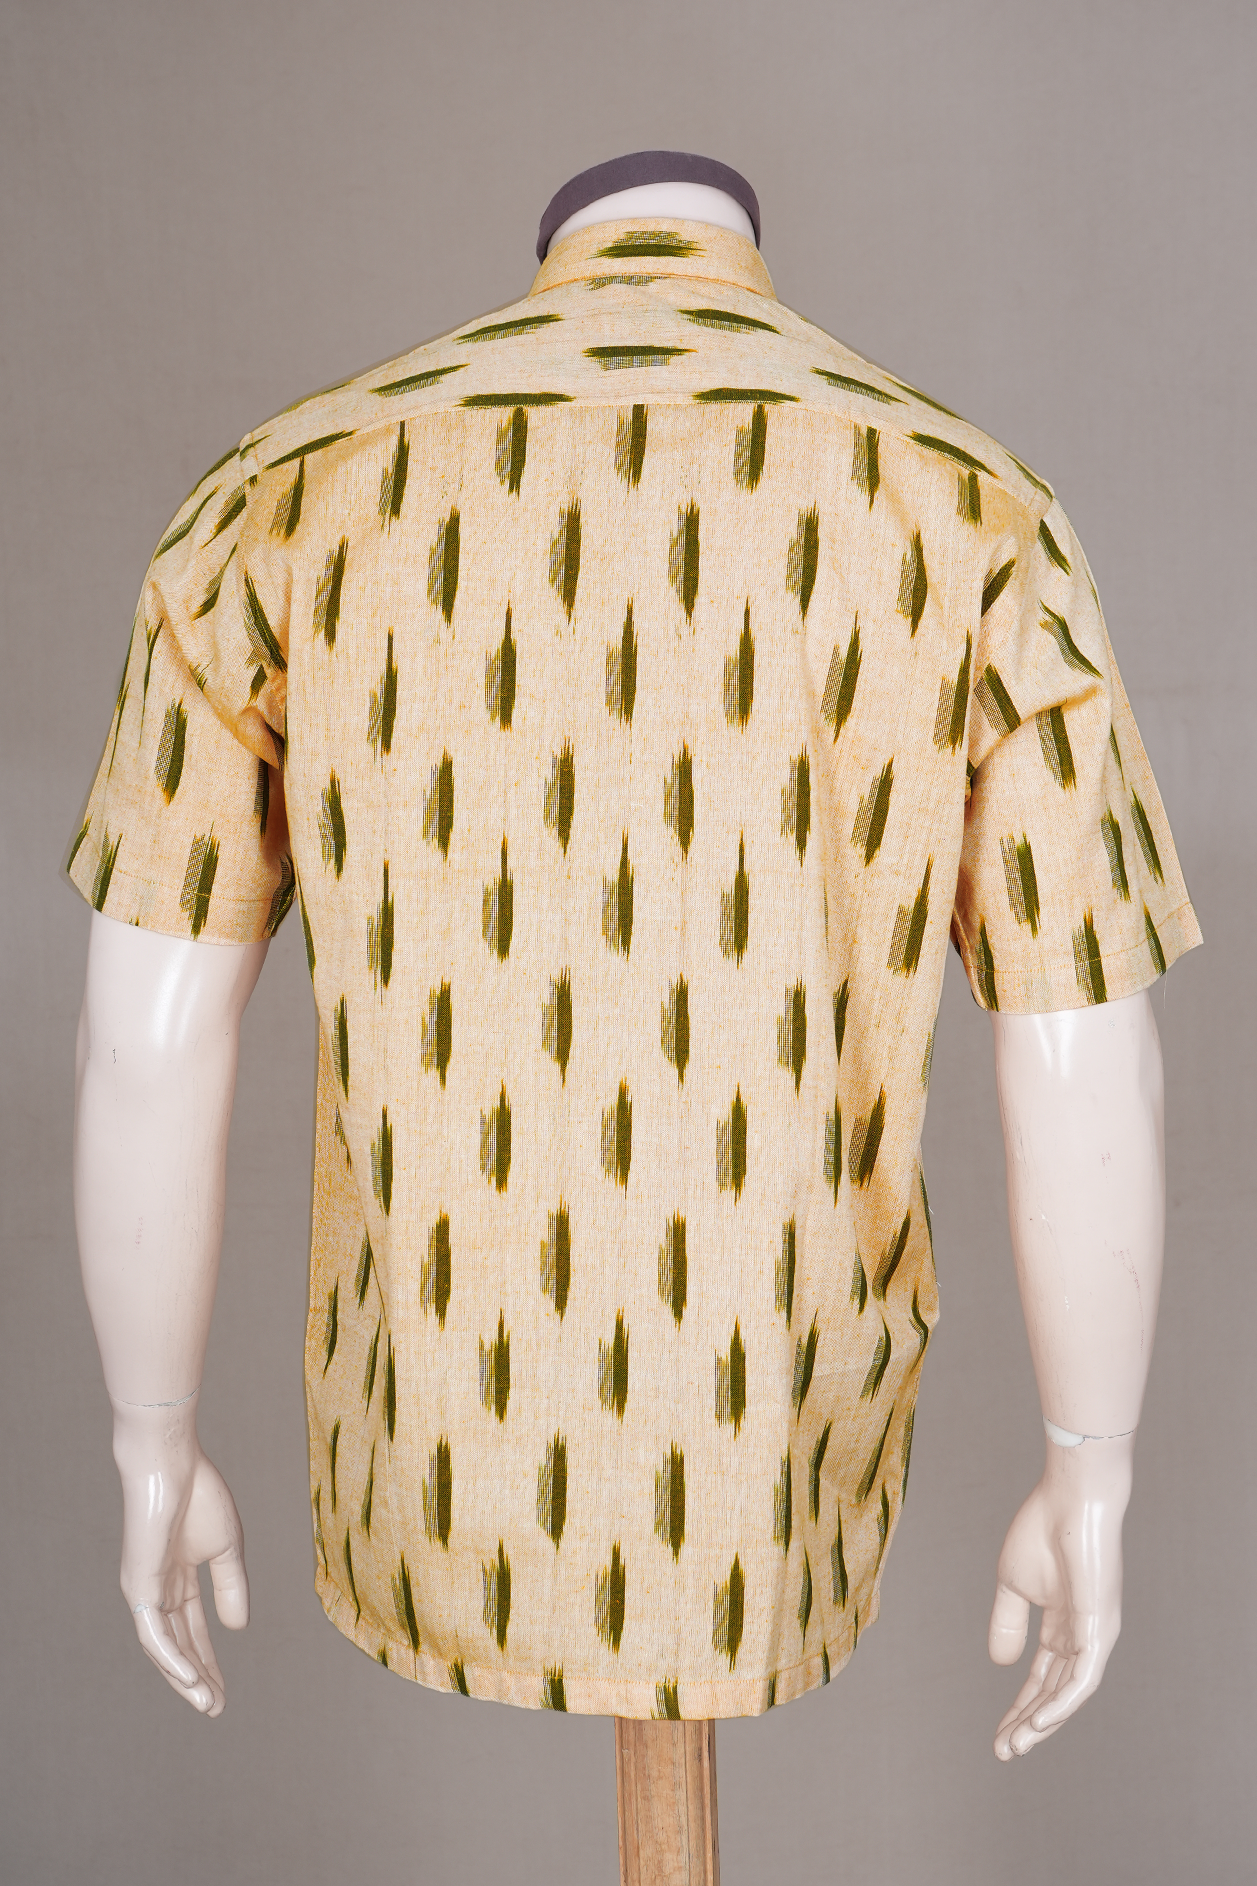 Regular Collar Stripes Design Caramel Yellow Cotton Shirt